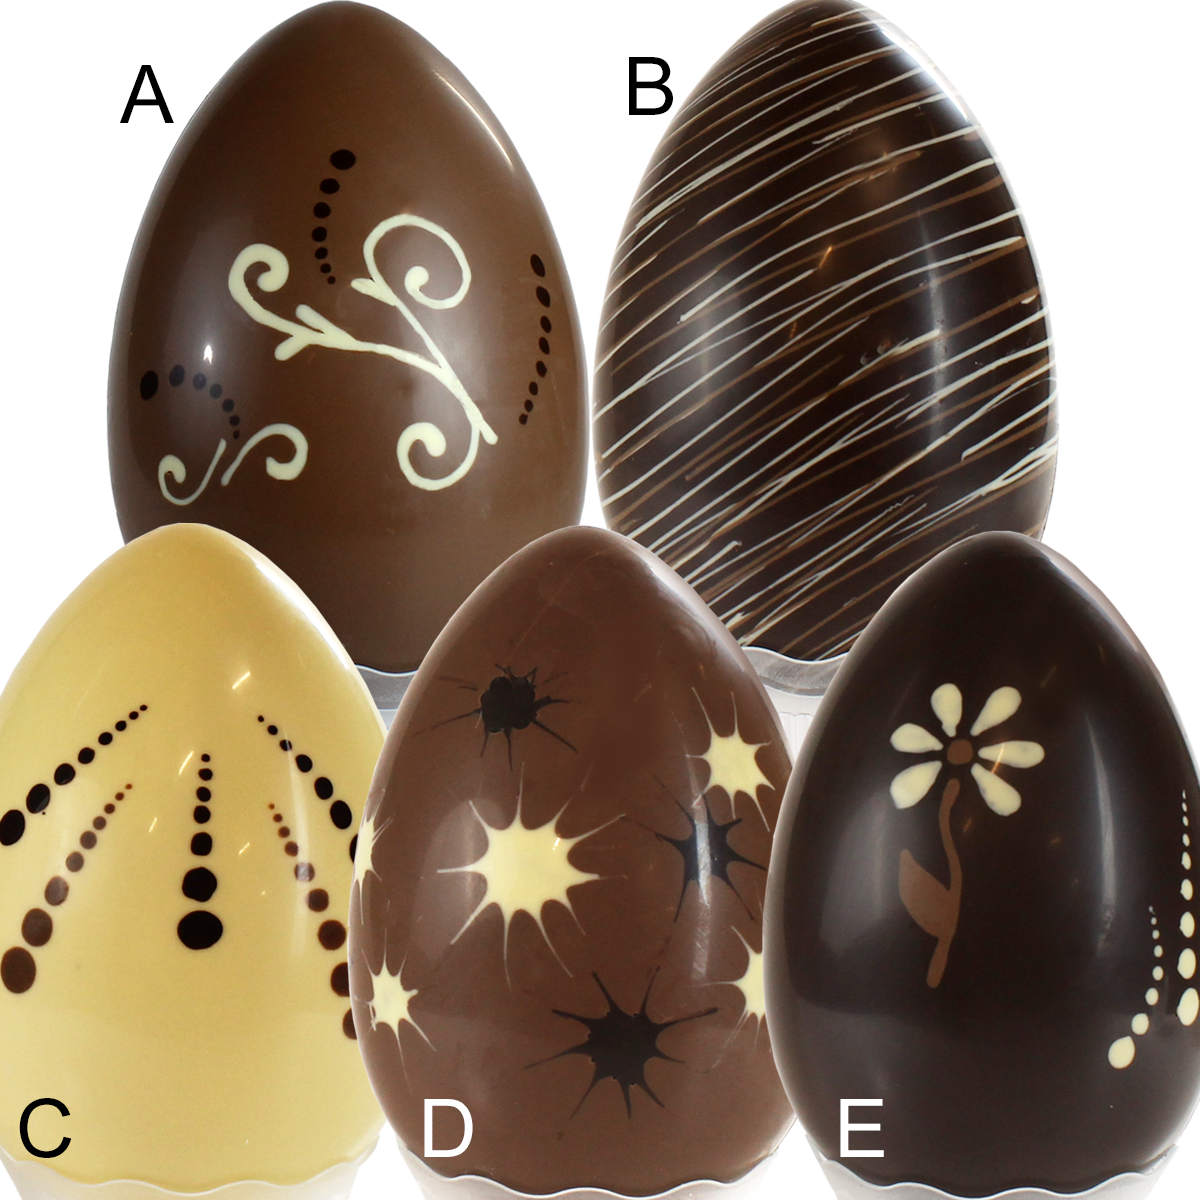 Uova di Pasqua di cioccolato con decorazioni fantasia al latte, bianco o  fondente